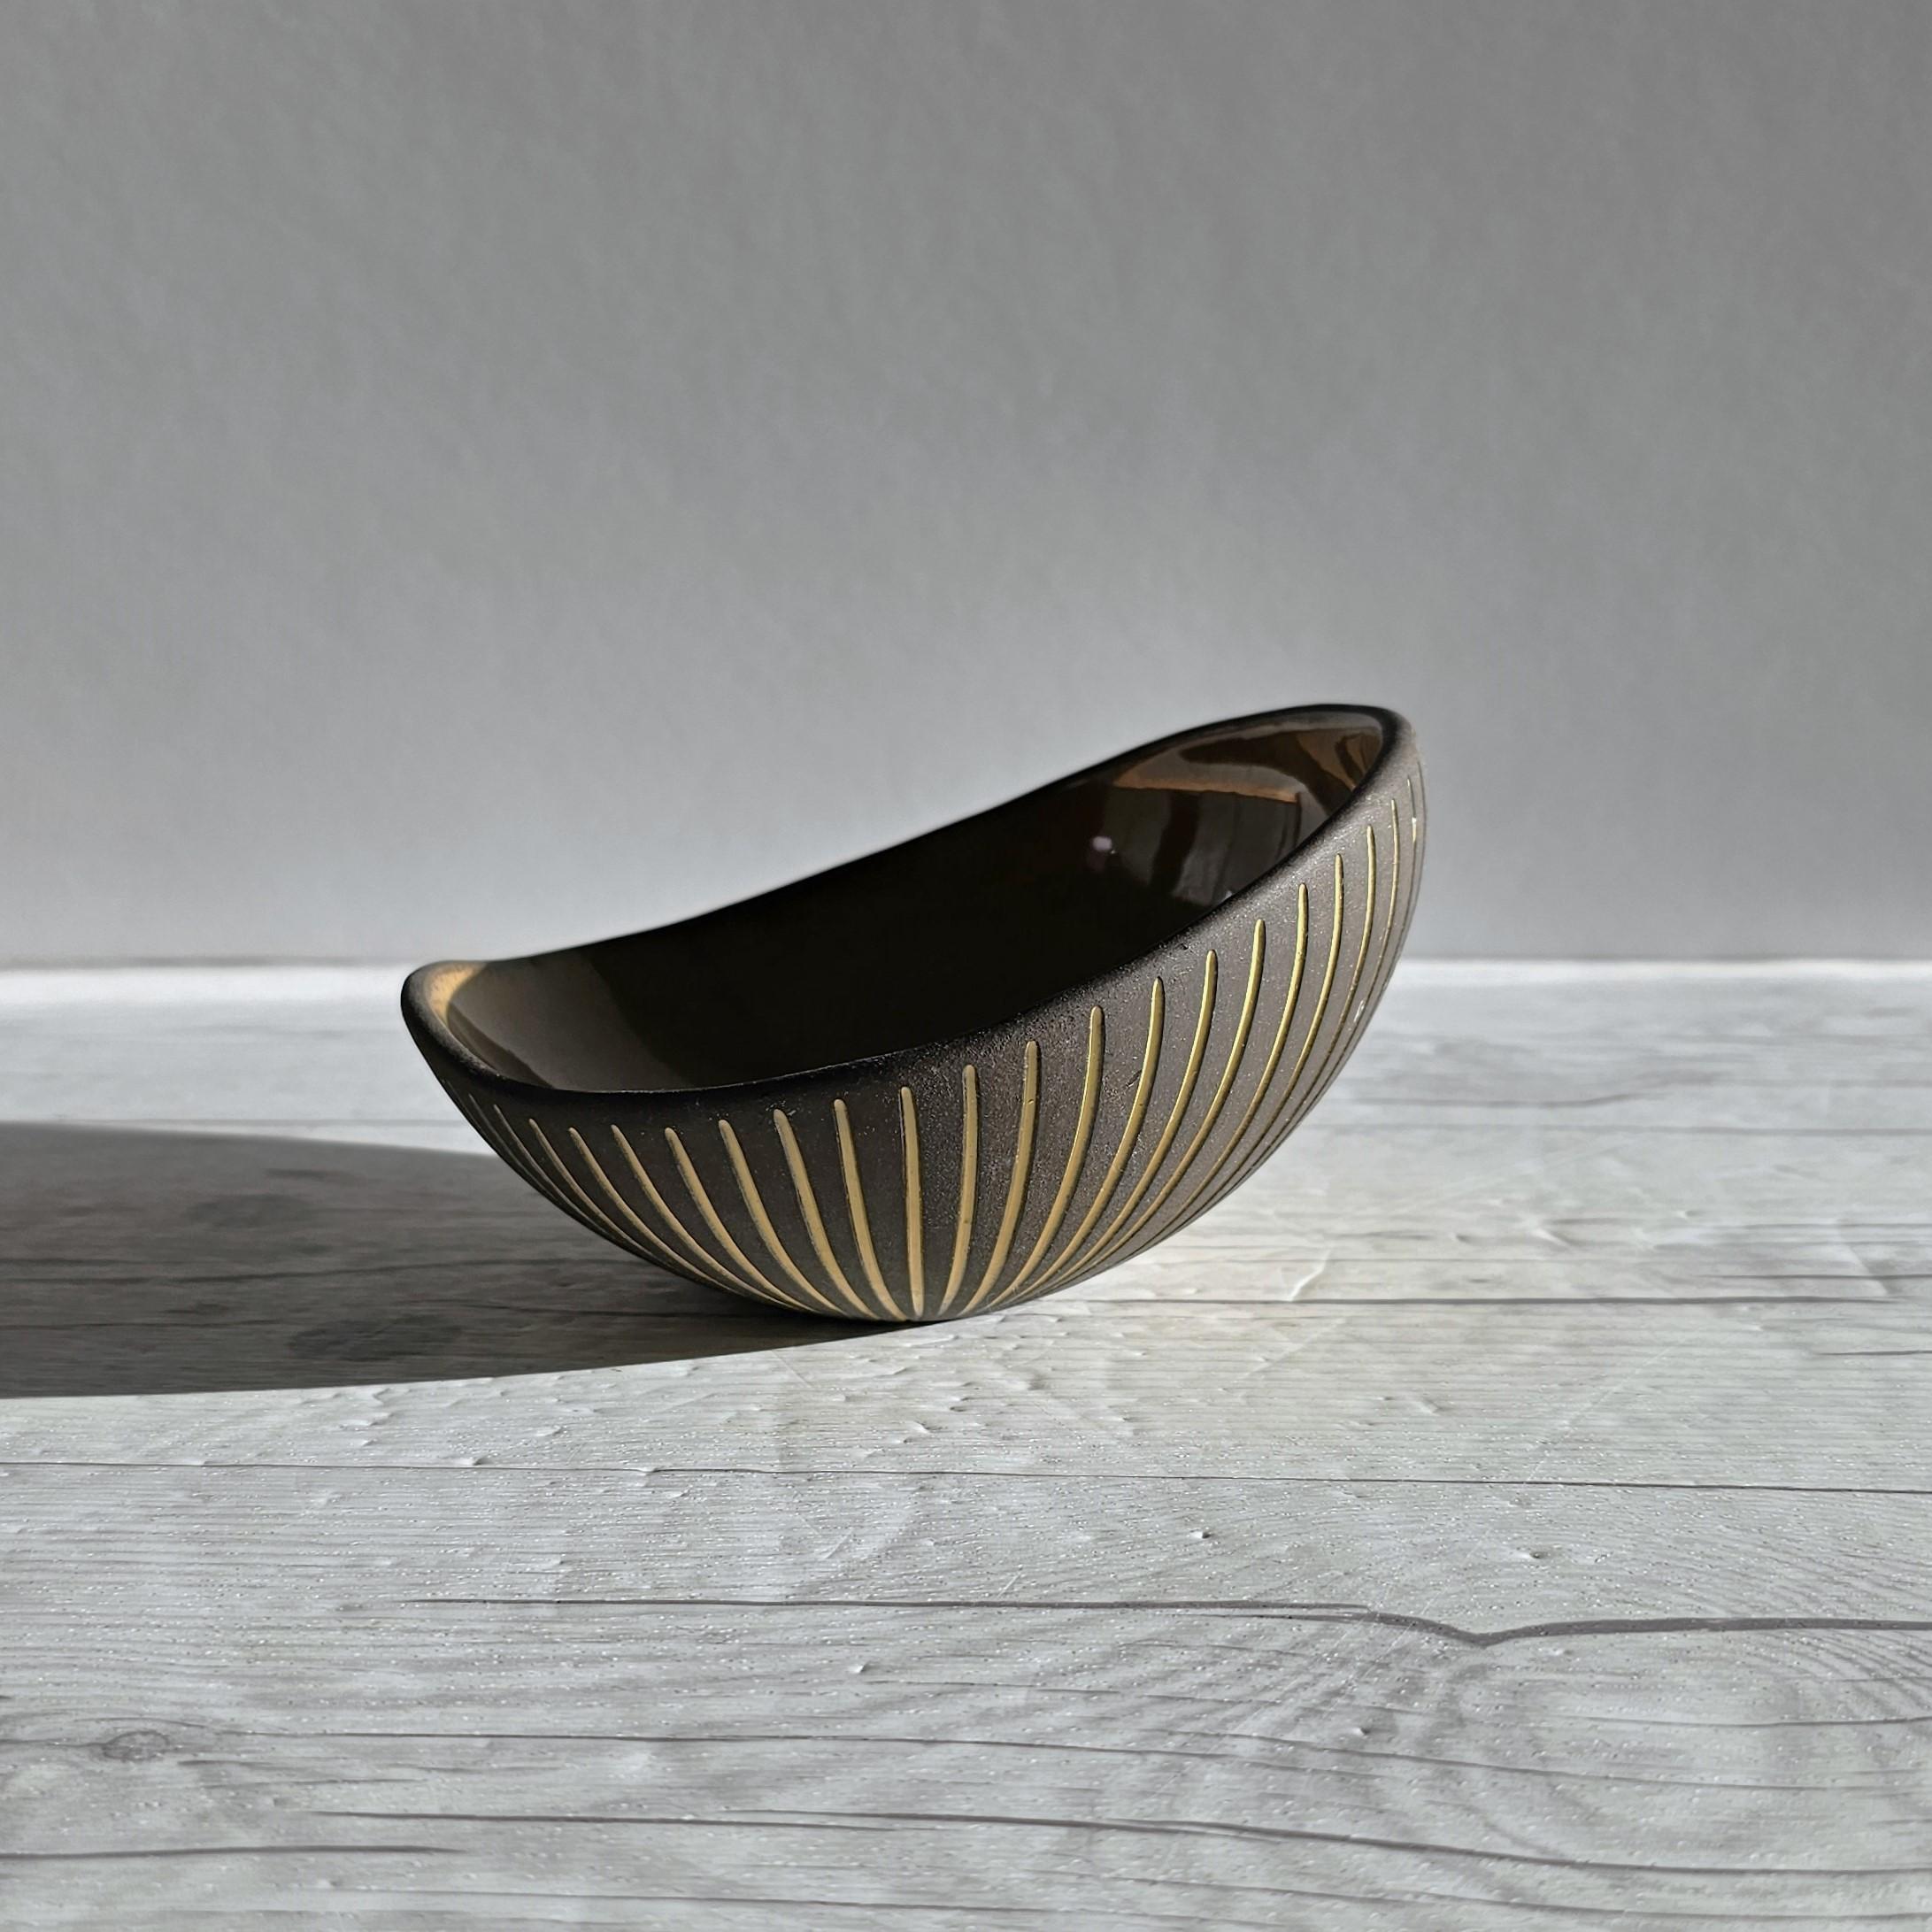 Ceramic Hjordis Oldfors for Upsala Ekeby, 1954 'Kokos' Series, Modernist Sculptural Dish For Sale